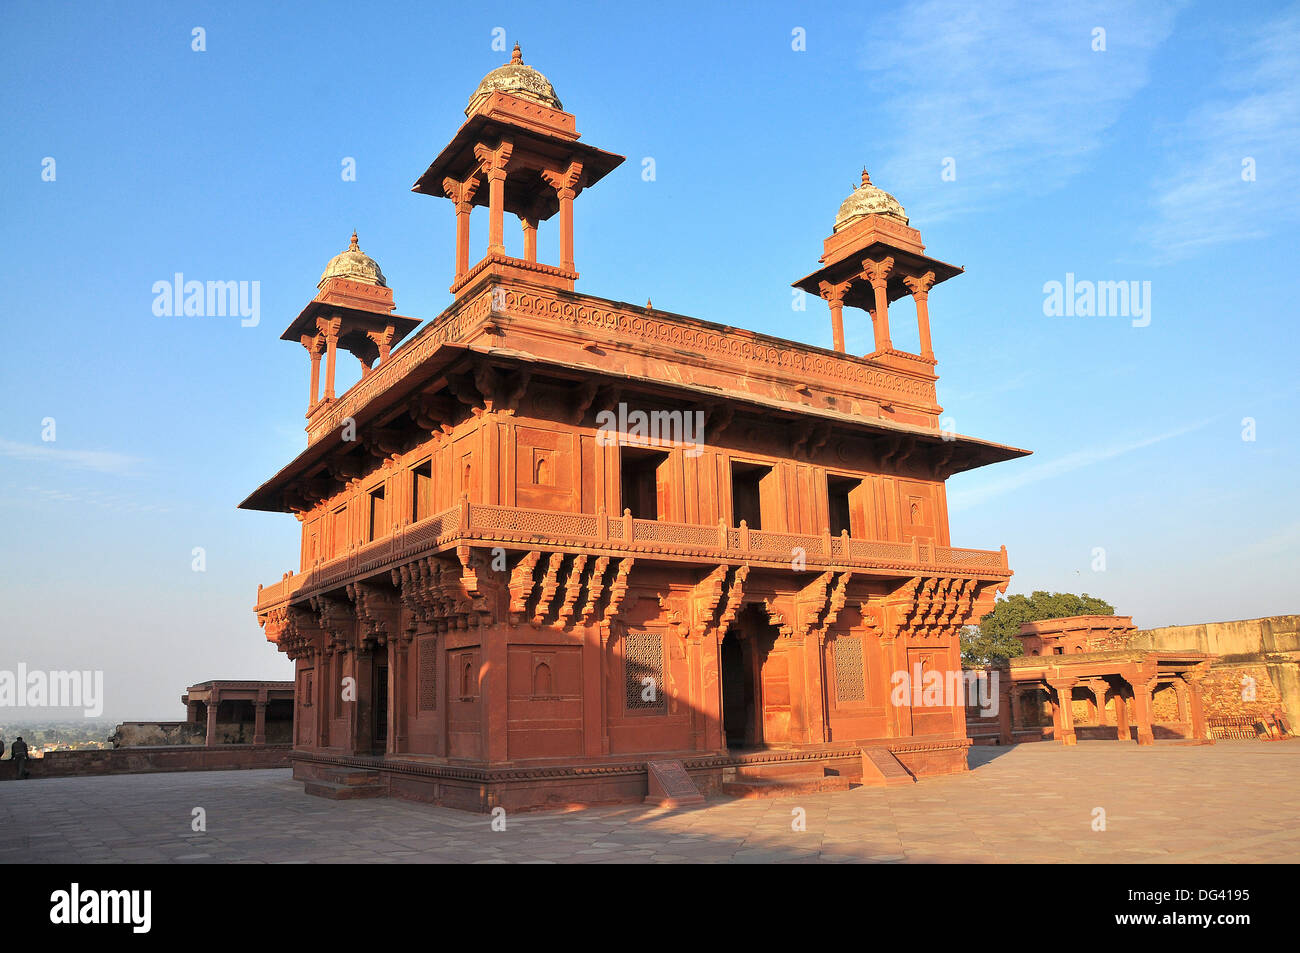 Palacio finamente esculpida que data del siglo XVI, Fatehpur Sikri, Sitio del Patrimonio Mundial de la UNESCO, Uttar Pradesh, India, Asia Foto de stock